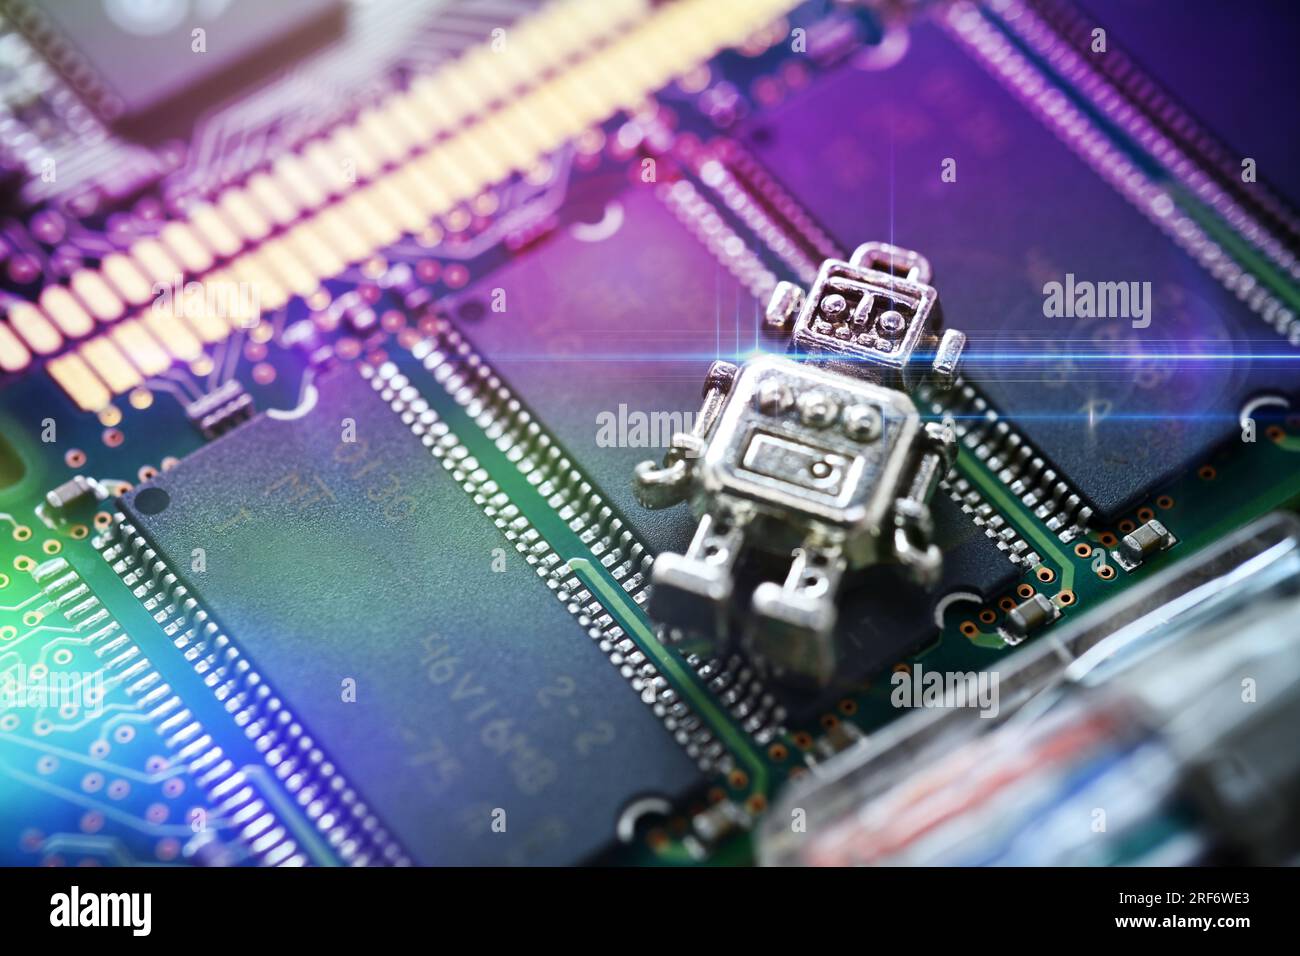 Miniatur-Roboter auf einer Computerplatine, Symbolfoto Künstliche Intelligenz Stock Photo